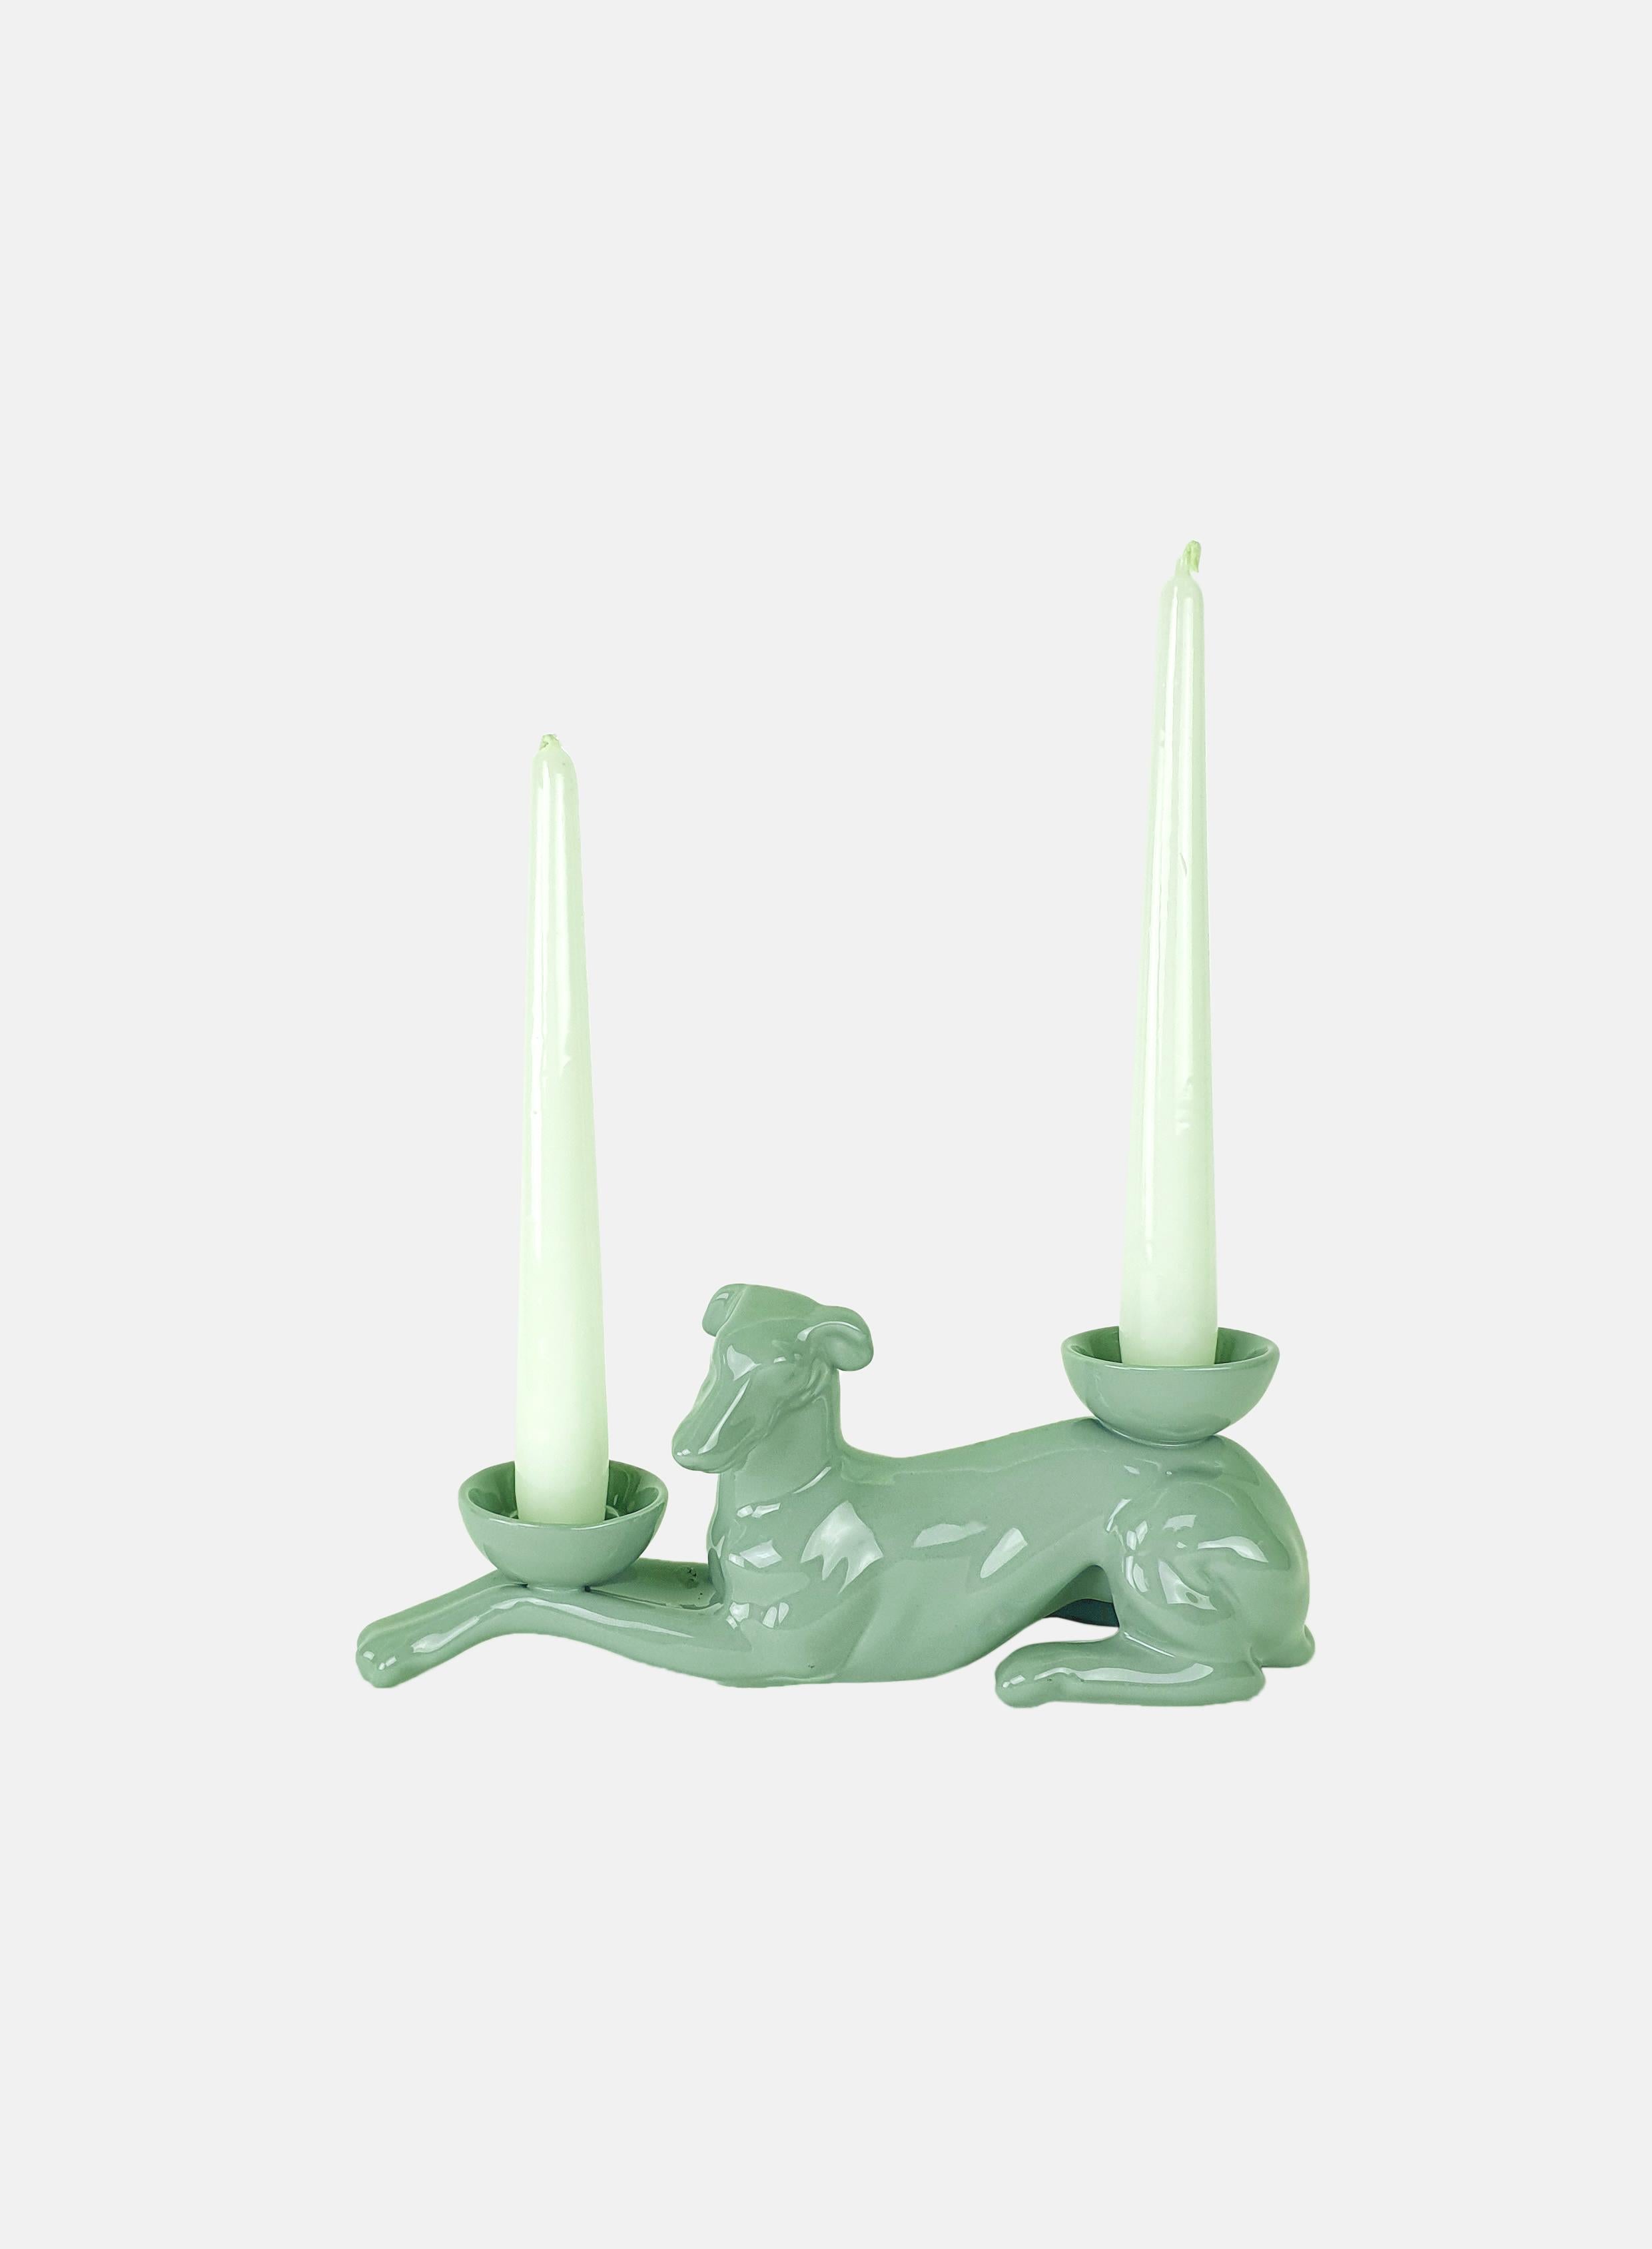 Dieser Windhund ist Teil einer originellen Sammlung von Kerzenhaltertieren. Die Form wird mit flüssigem Ton geformt, gekachelt und von Hand in einer breiten Palette von Farben bemalt, von den zartesten Pastelltönen bis zu den satteren und